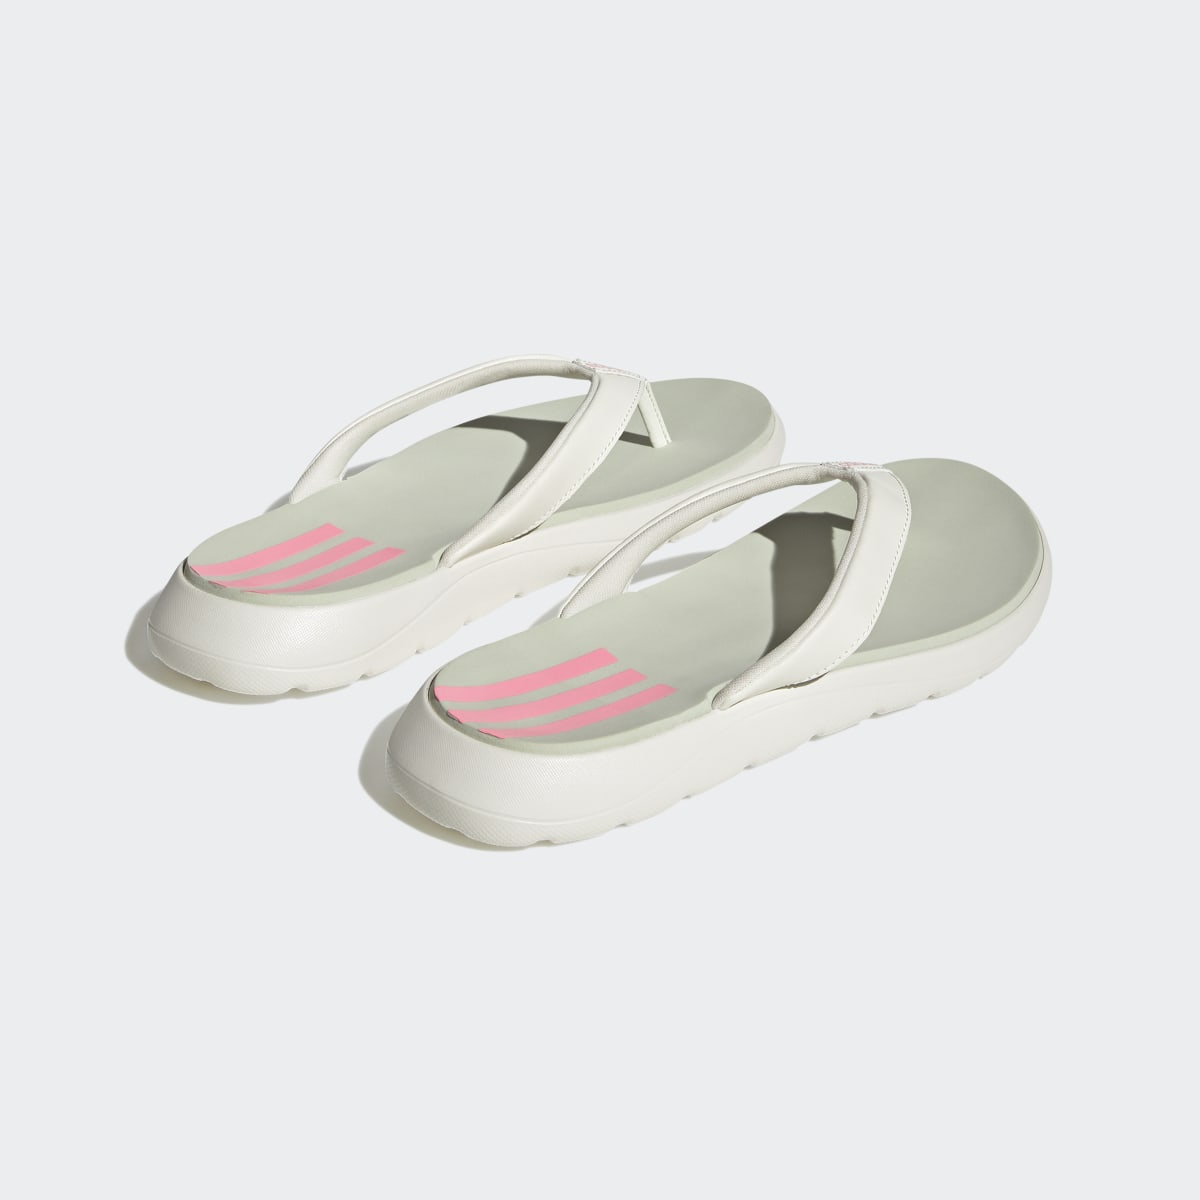 Adidas Comfort Flip-Flops. 6